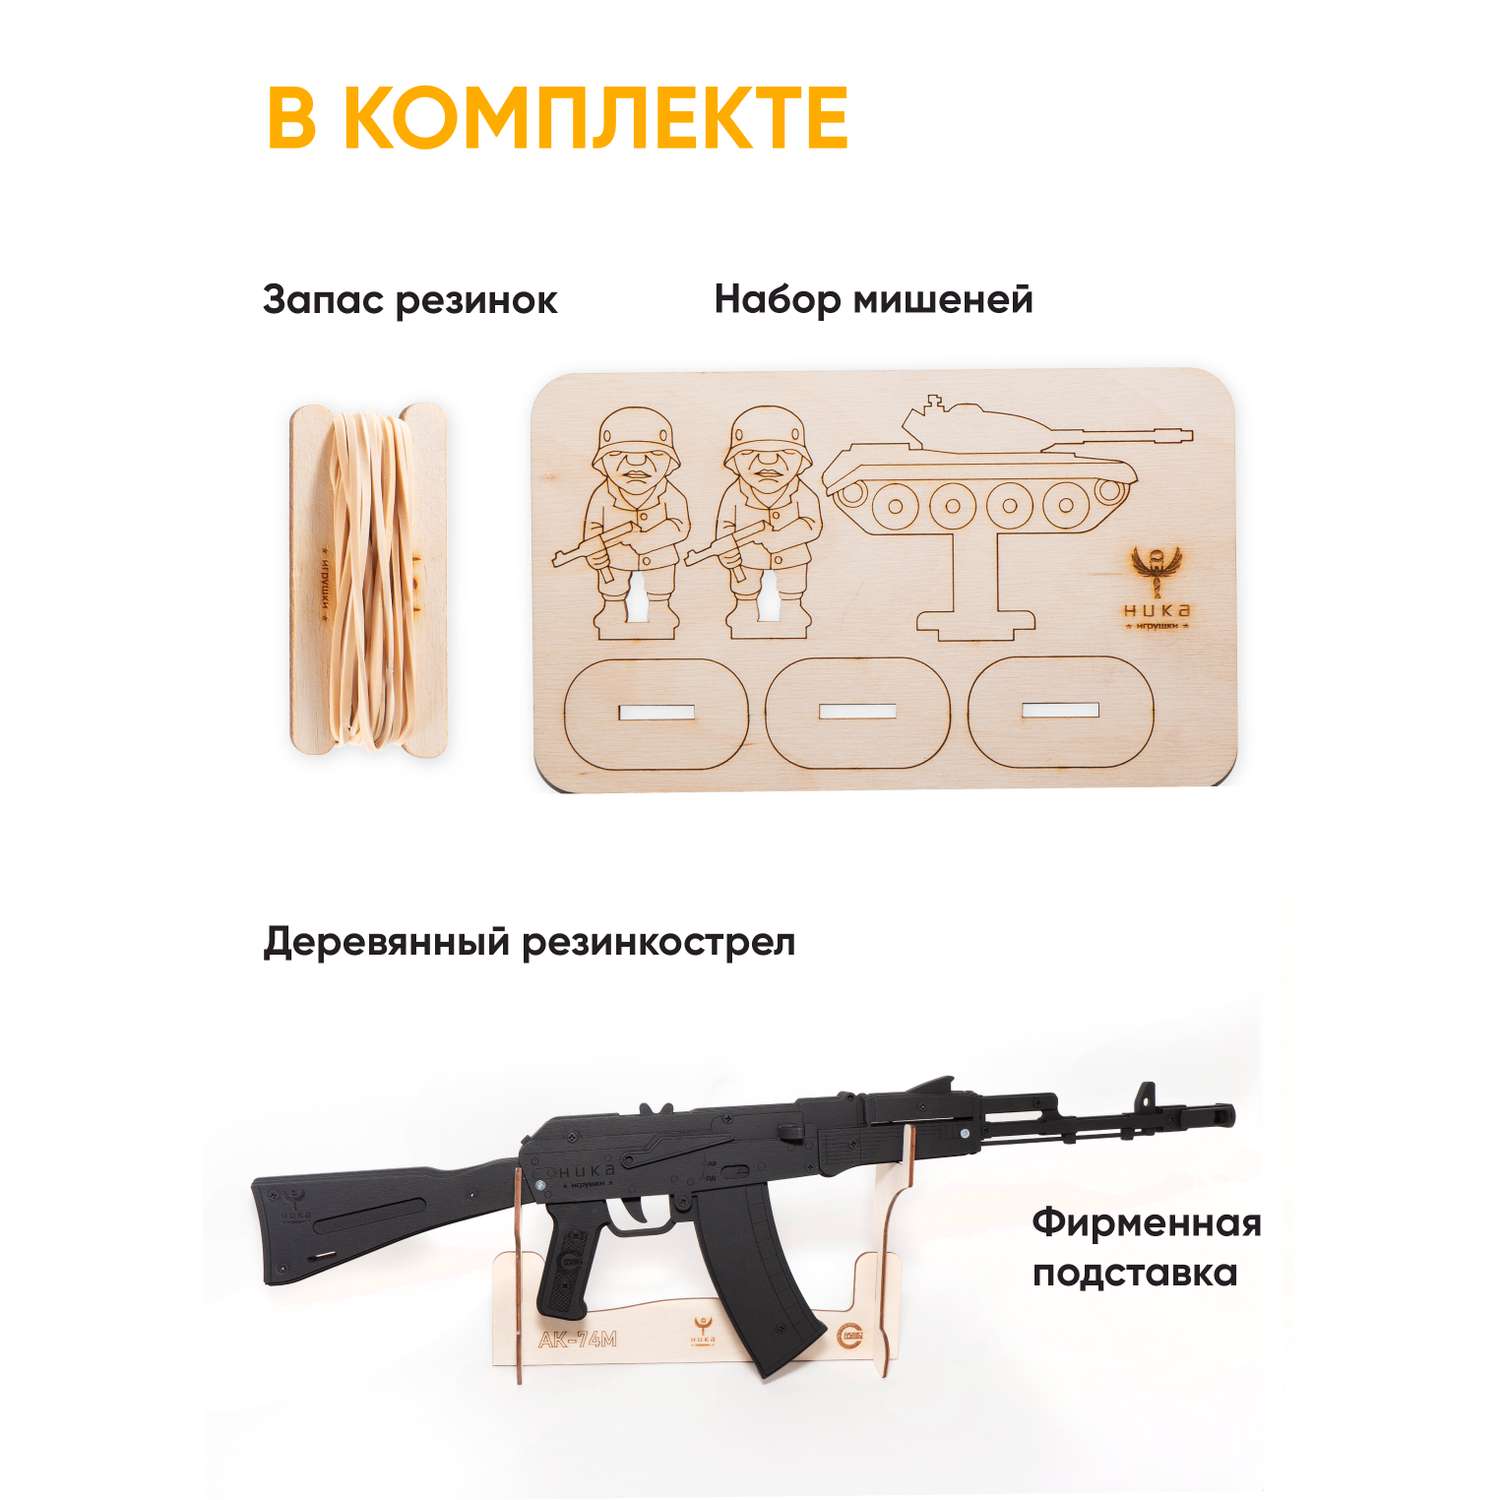 Резинкострел НИКА игрушки Автомат АК-74М в подарочной упаковке - фото 2